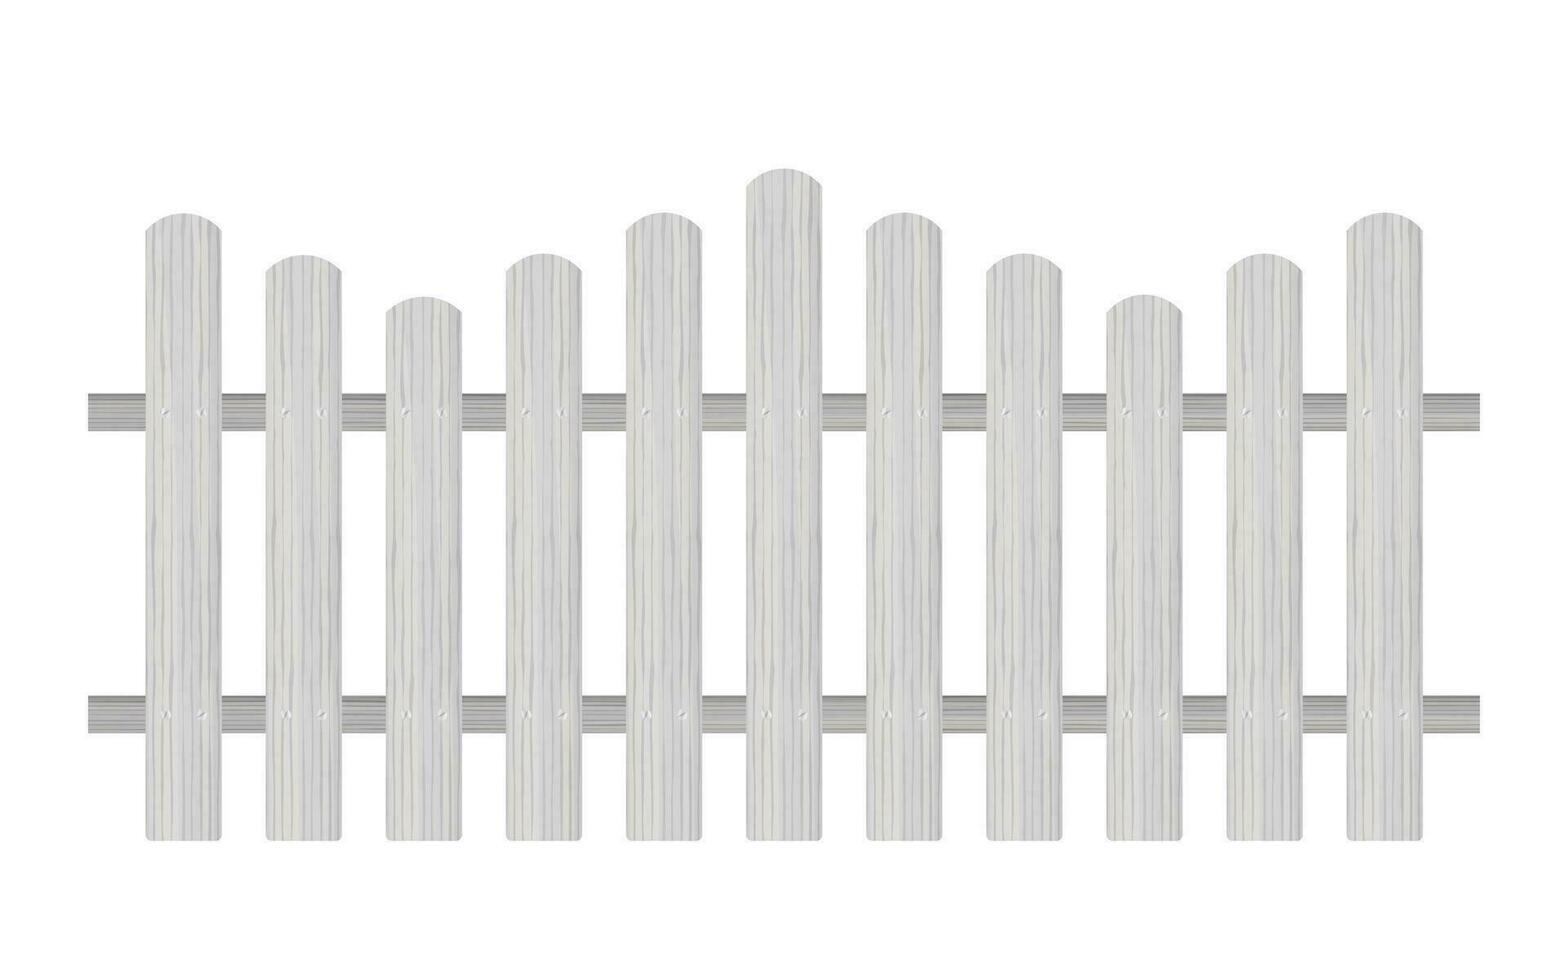 postering staket, trä- texturerad, avrundad kanter. vektor stock illustration.